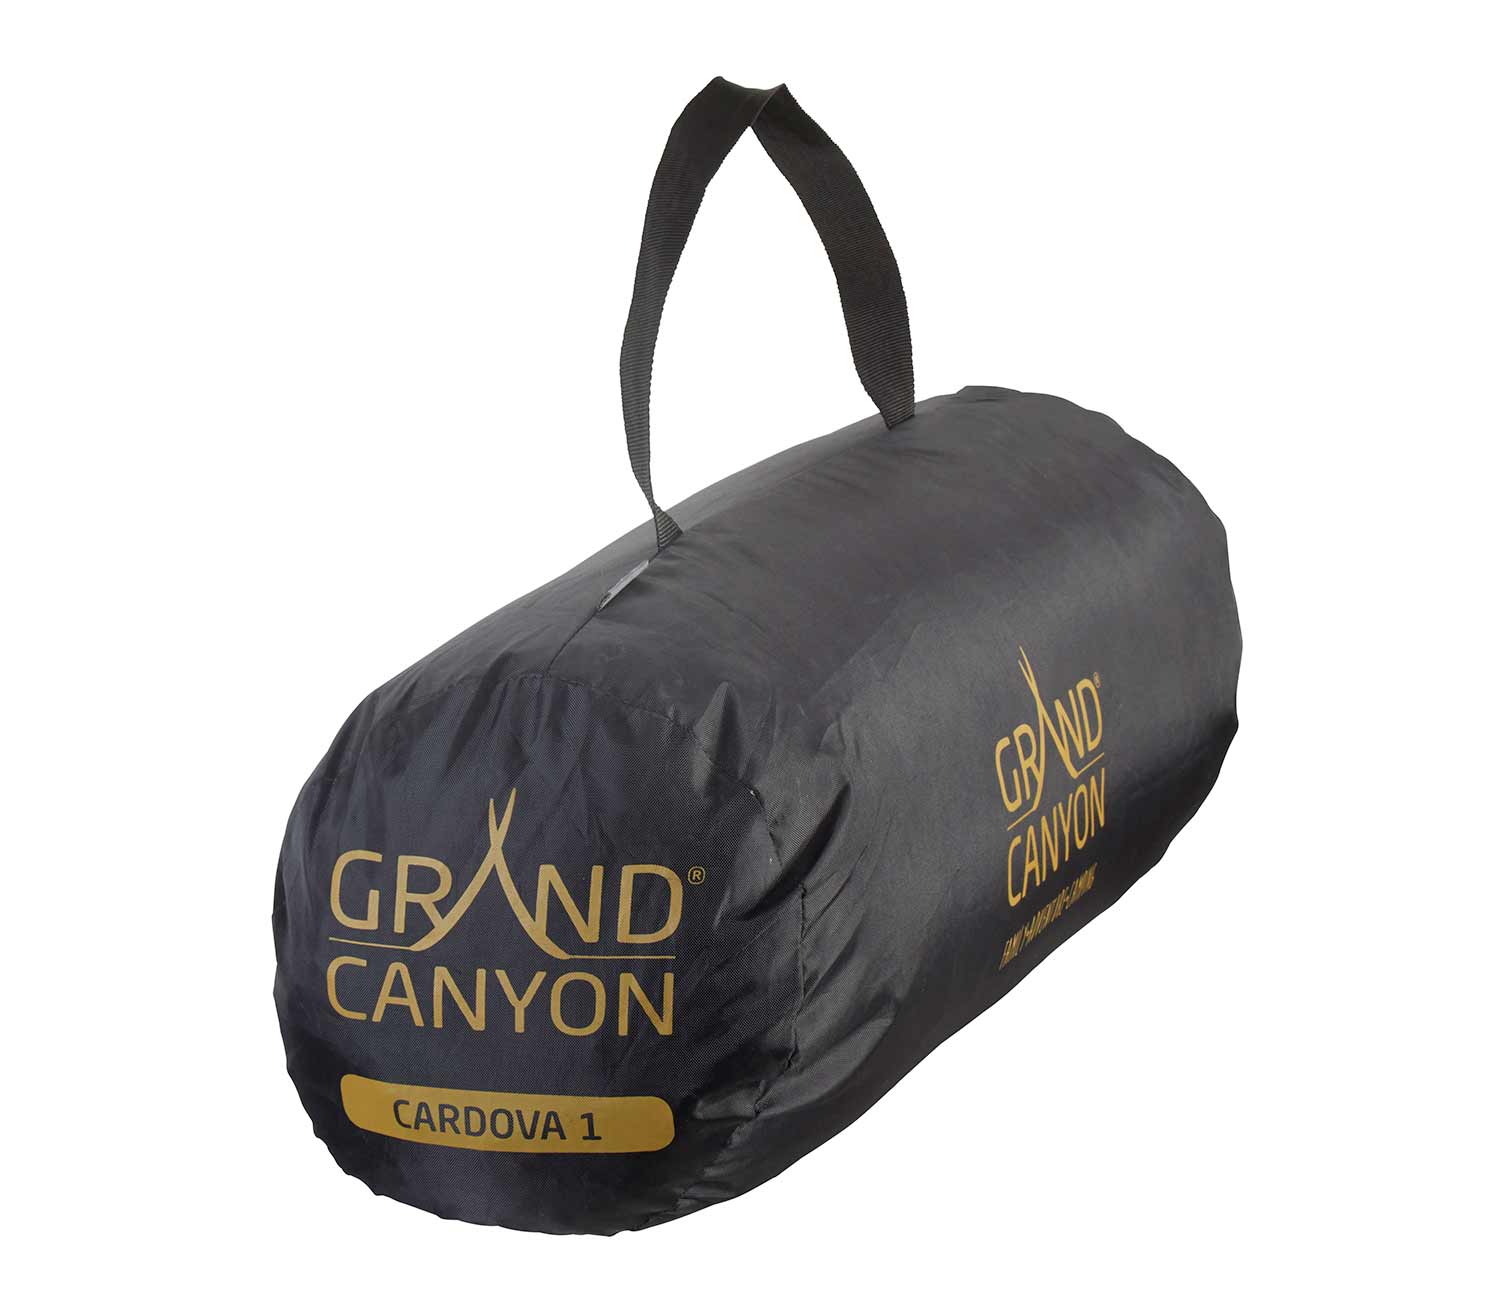 Tienda de Campaña Grand Canyon Cardova 1 bolsa